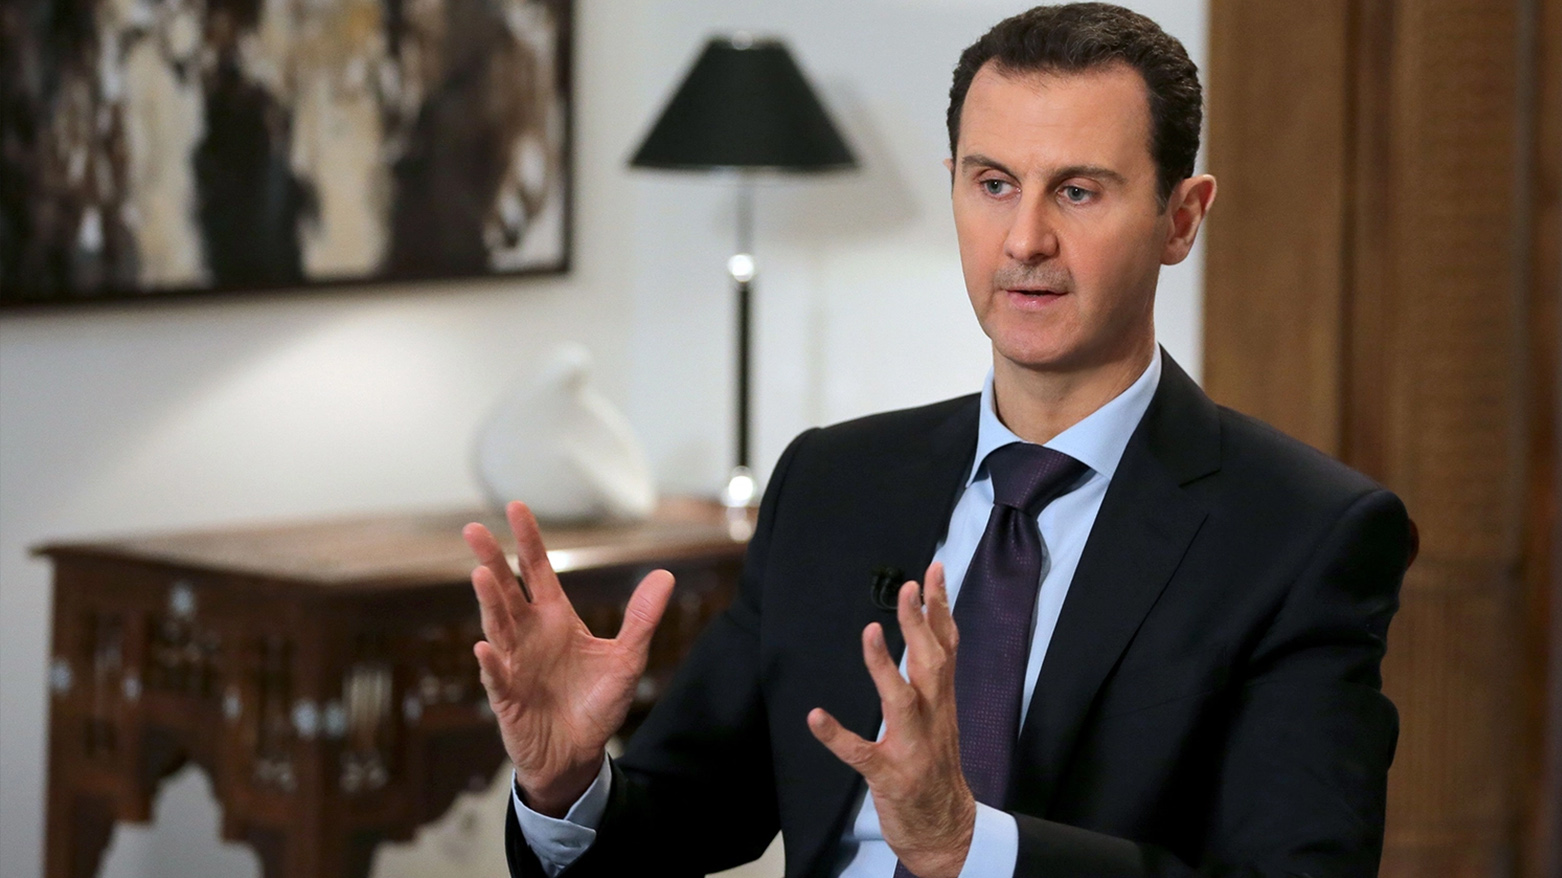 بشار اسد رئیس جمهور سوریه